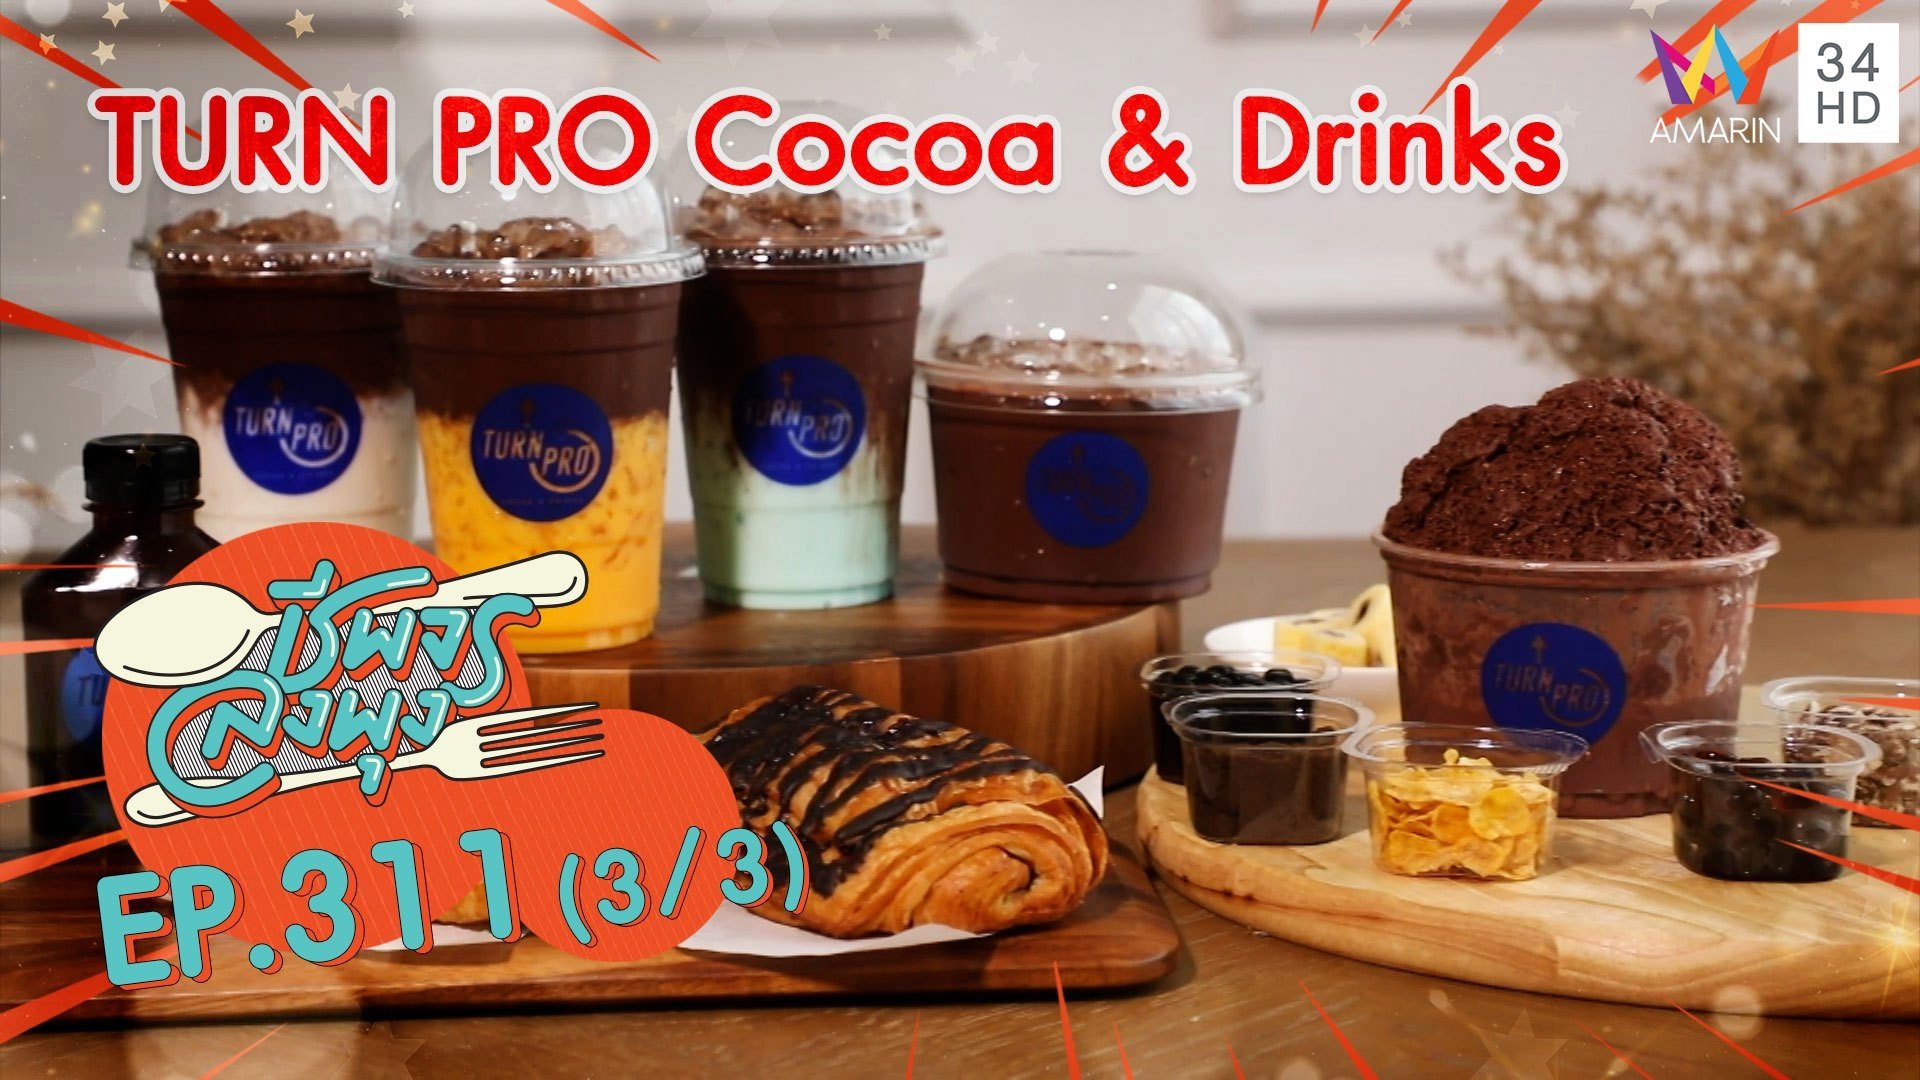 โกโก้กินกับอะไรก็อร่อย ! @ ร้าน TURN PRO Cocoa & Drinks | ชีพจรลงพุง | 11 ก.ค. 64 (3/3) | AMARIN TVHD34